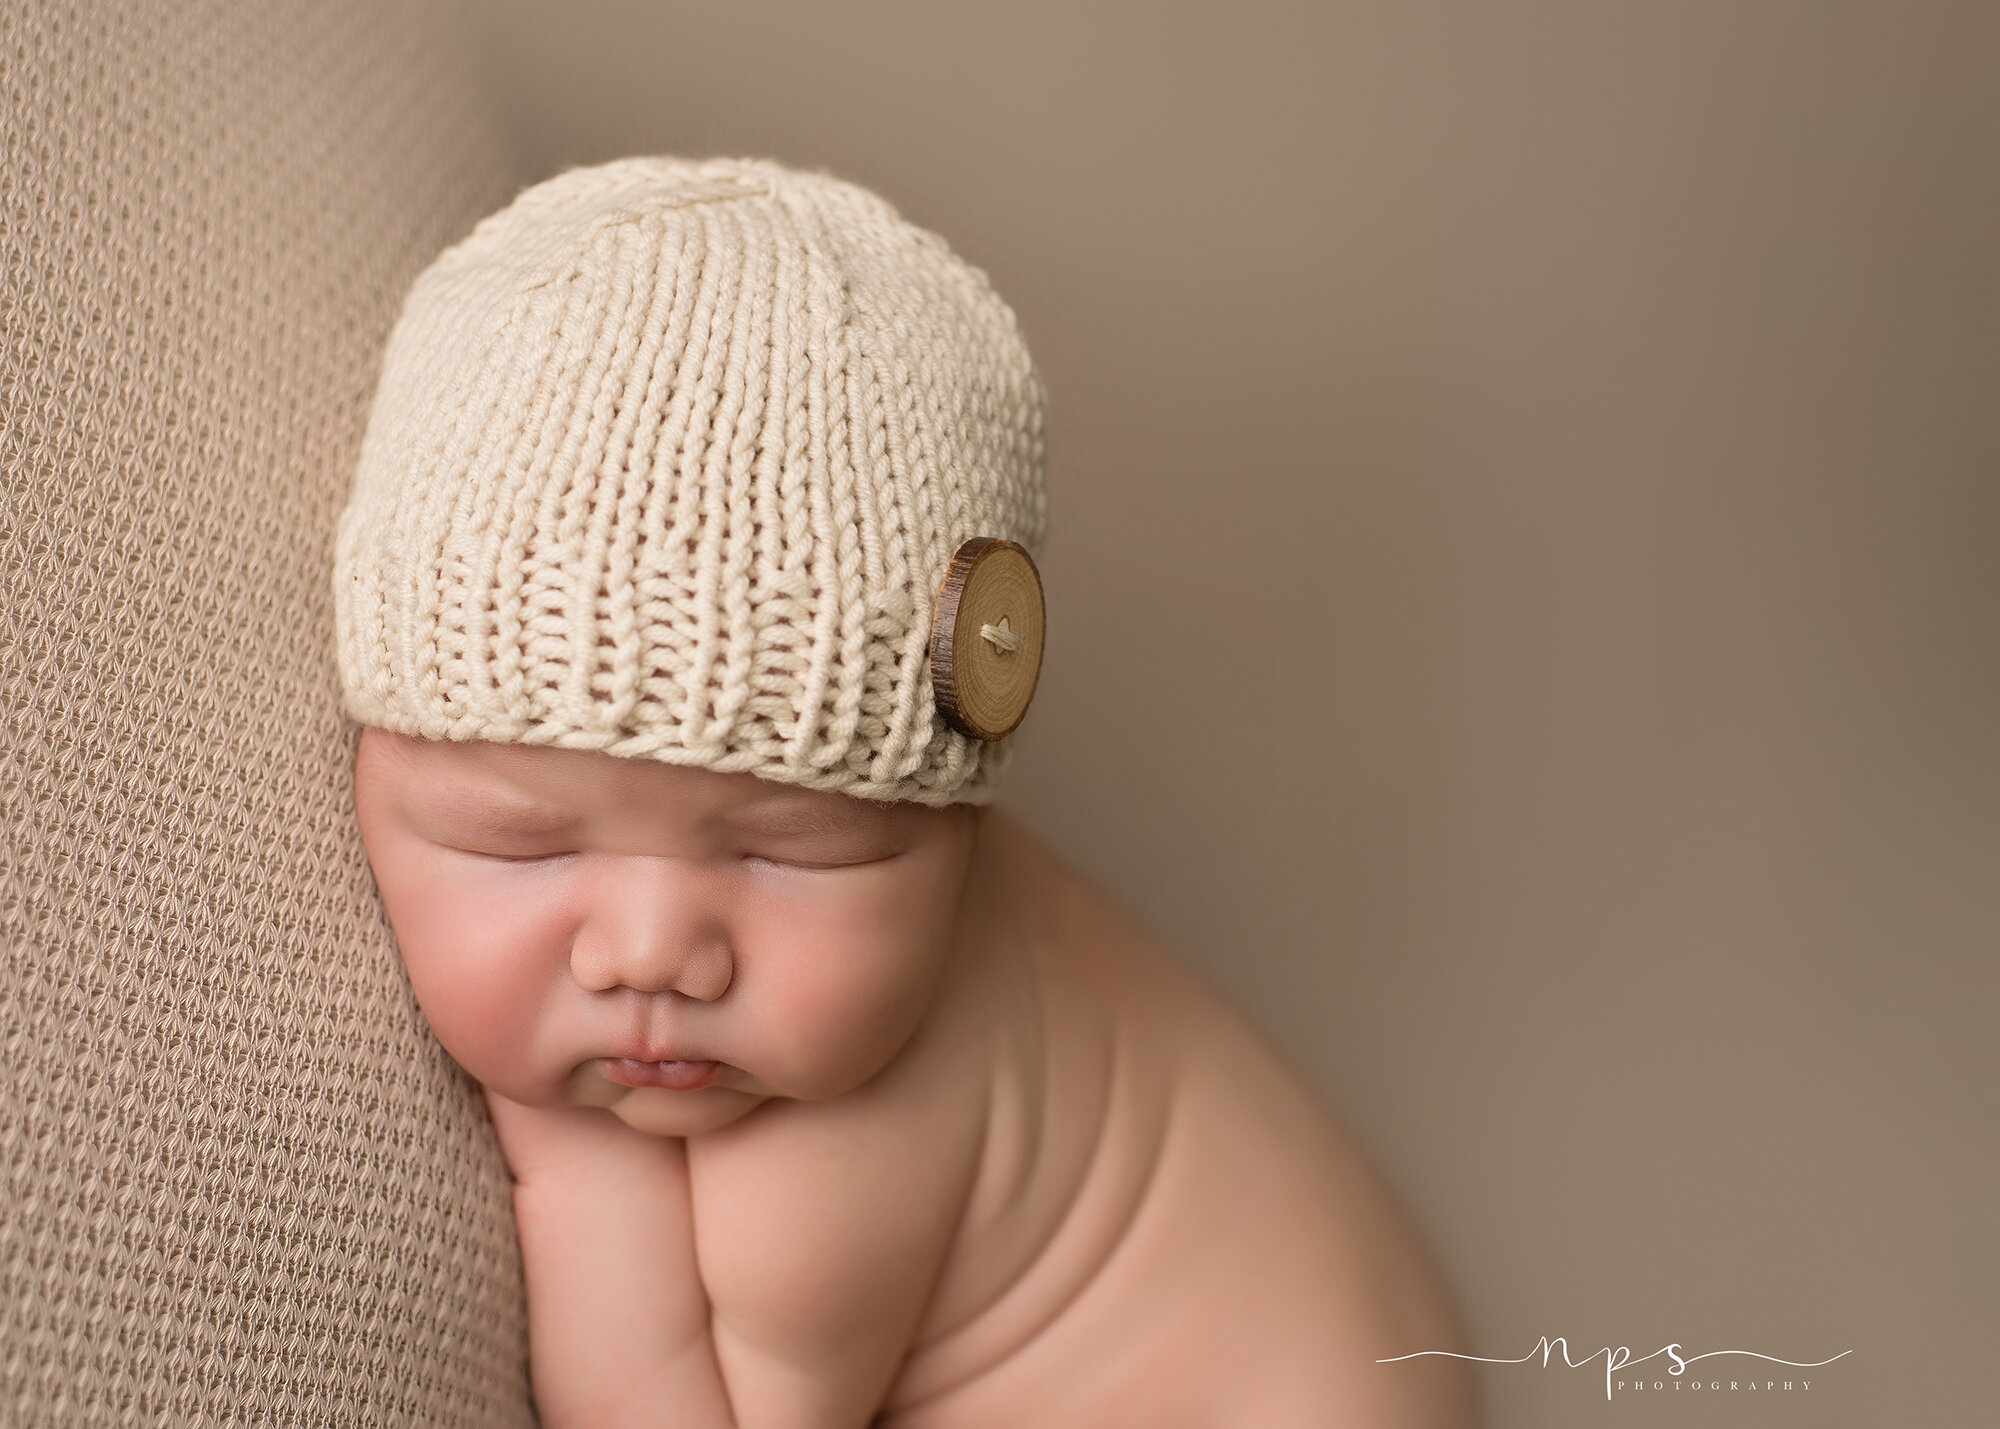 Newborn in a hat